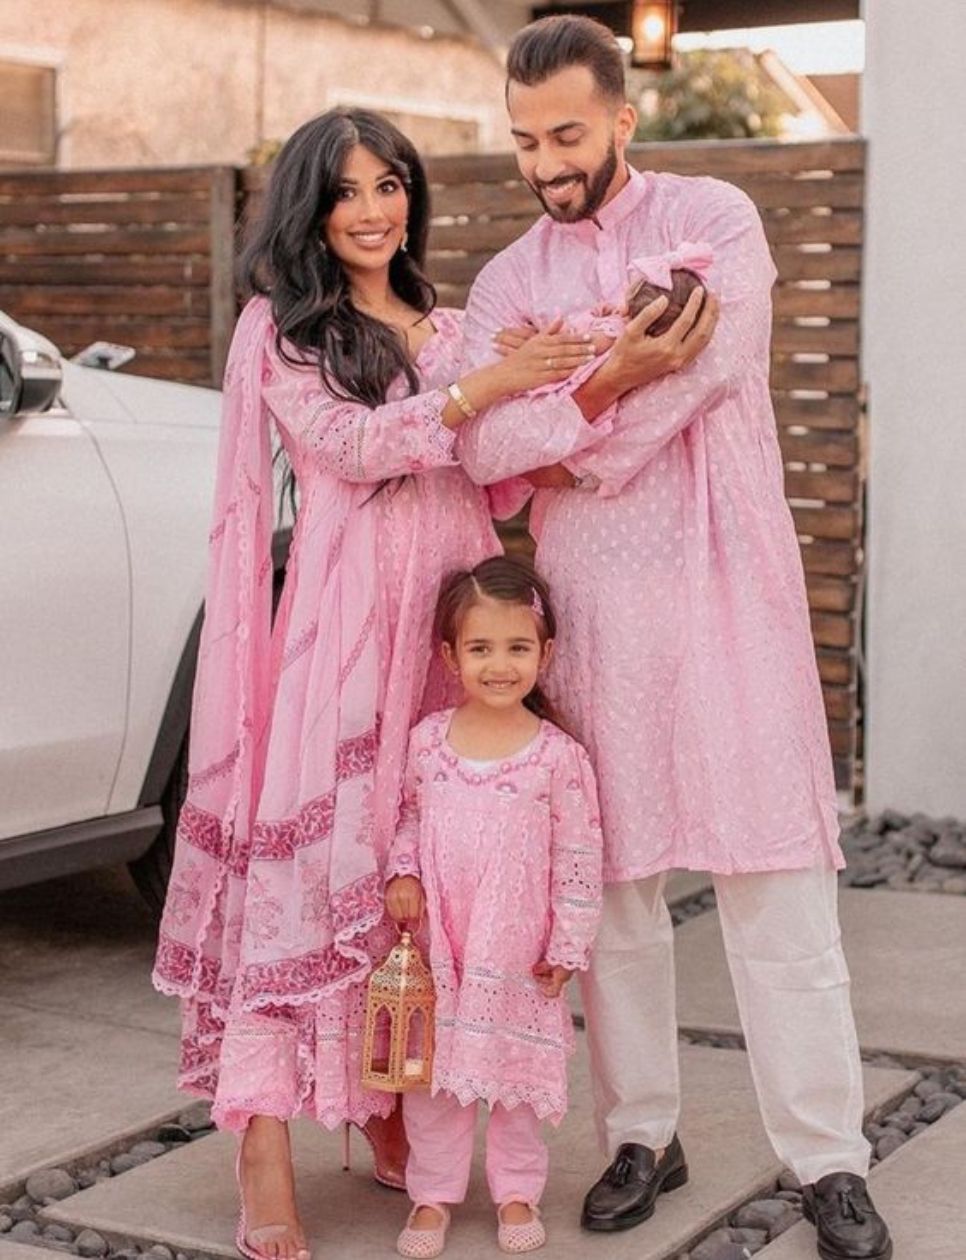 Tampil soft bersama pasangan saat lebaran dengan outfit warna pink